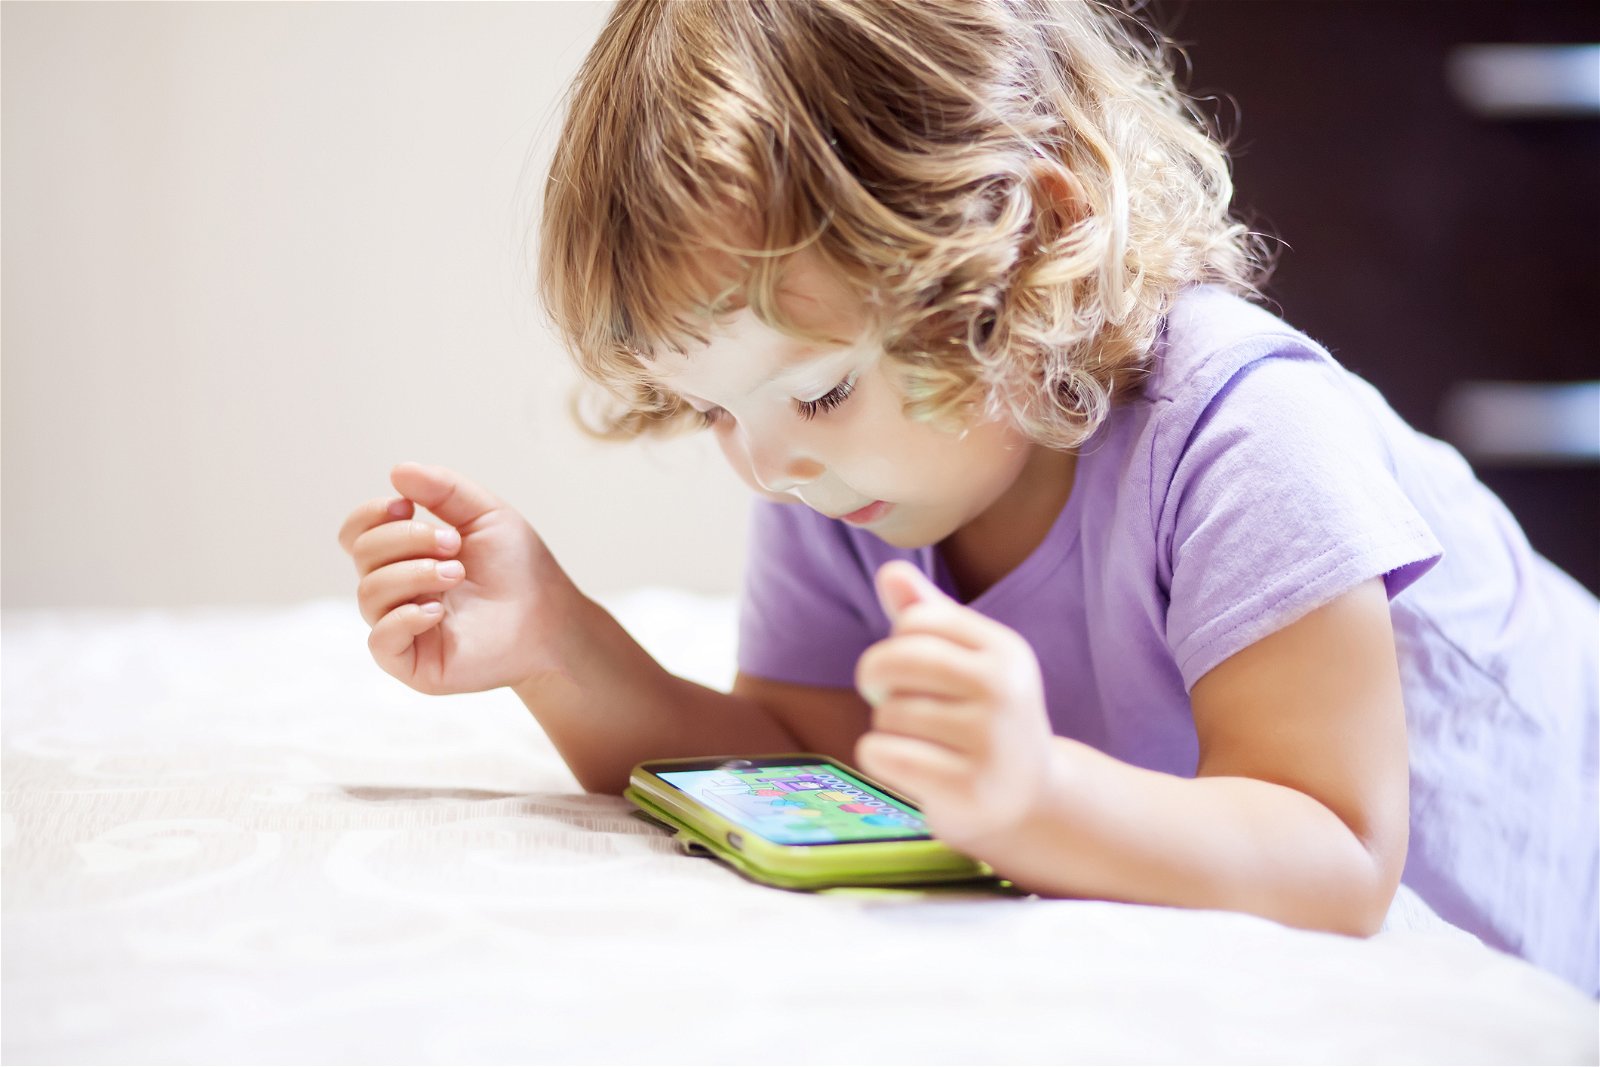 gioco giocattolo clementoni baby cellulare smartphone per bambini 6 mesi +